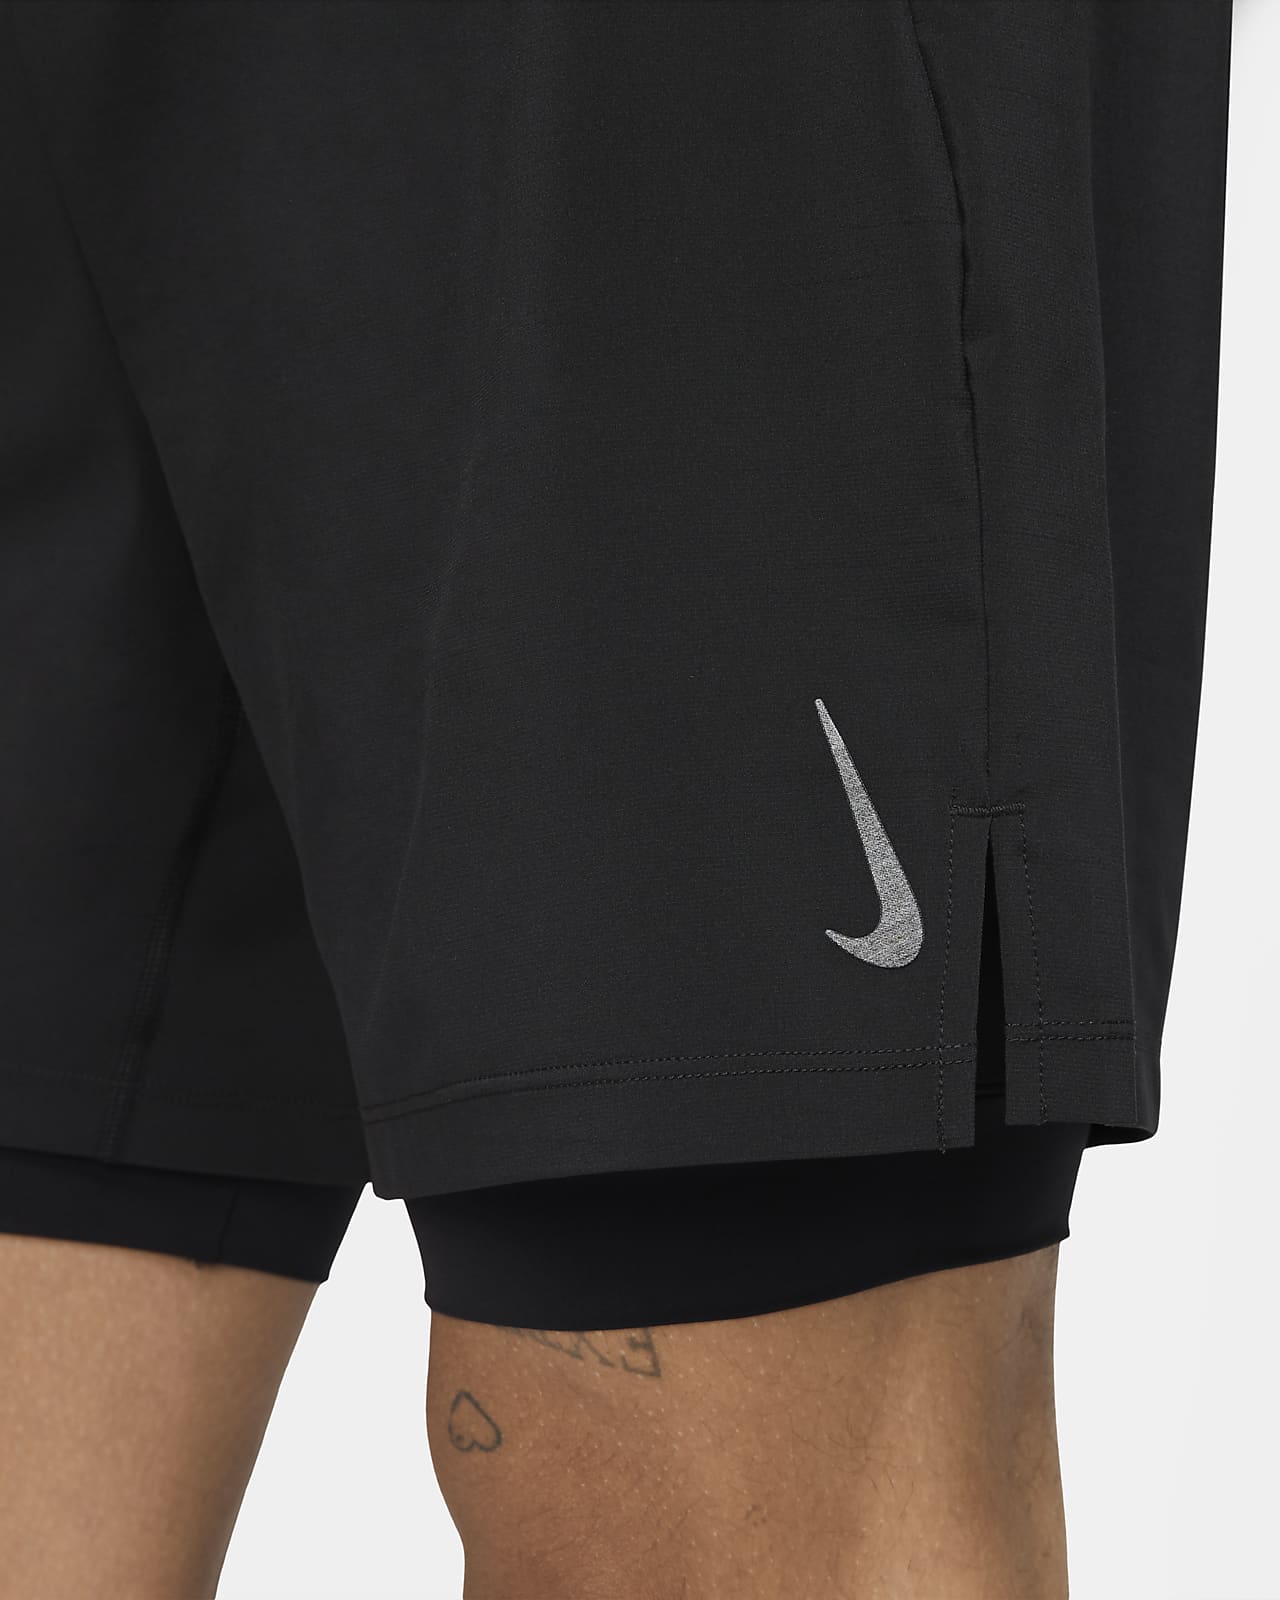 Nike Yoga Men's 2-in-1 Shorts